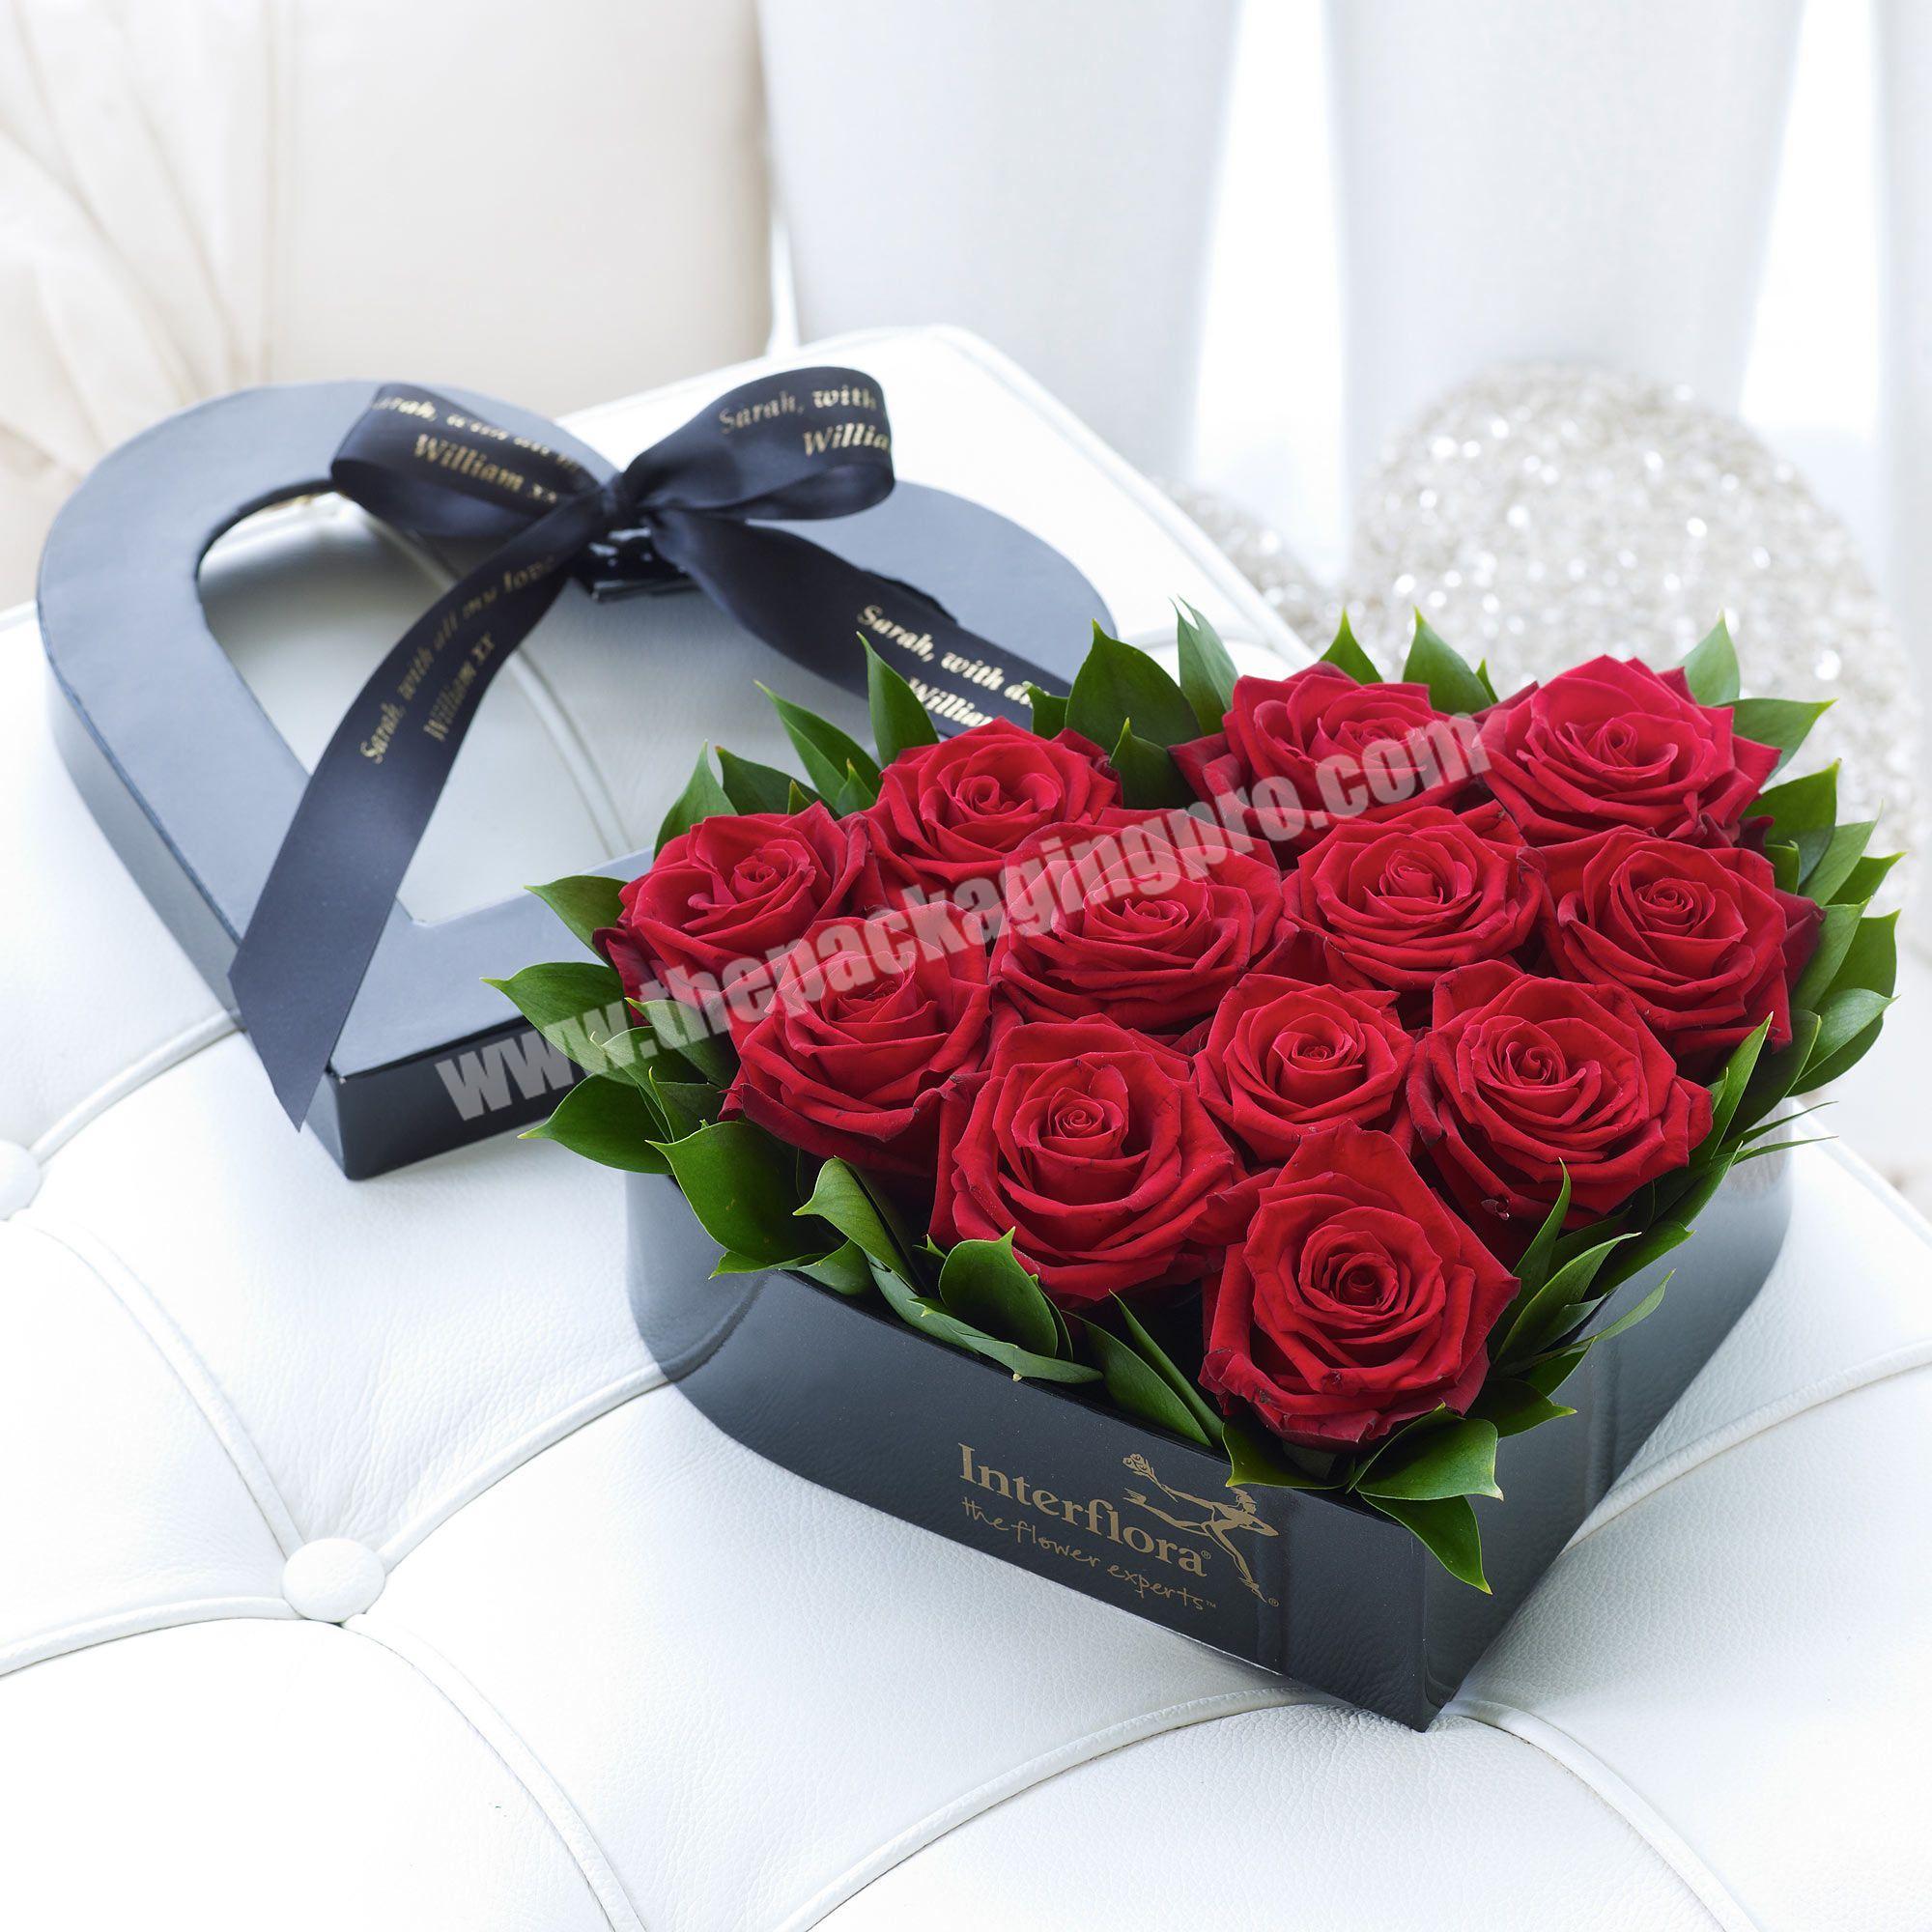 2020 factory luxury custom rose flower box packaging custom logo printing design heart flower box set gift box